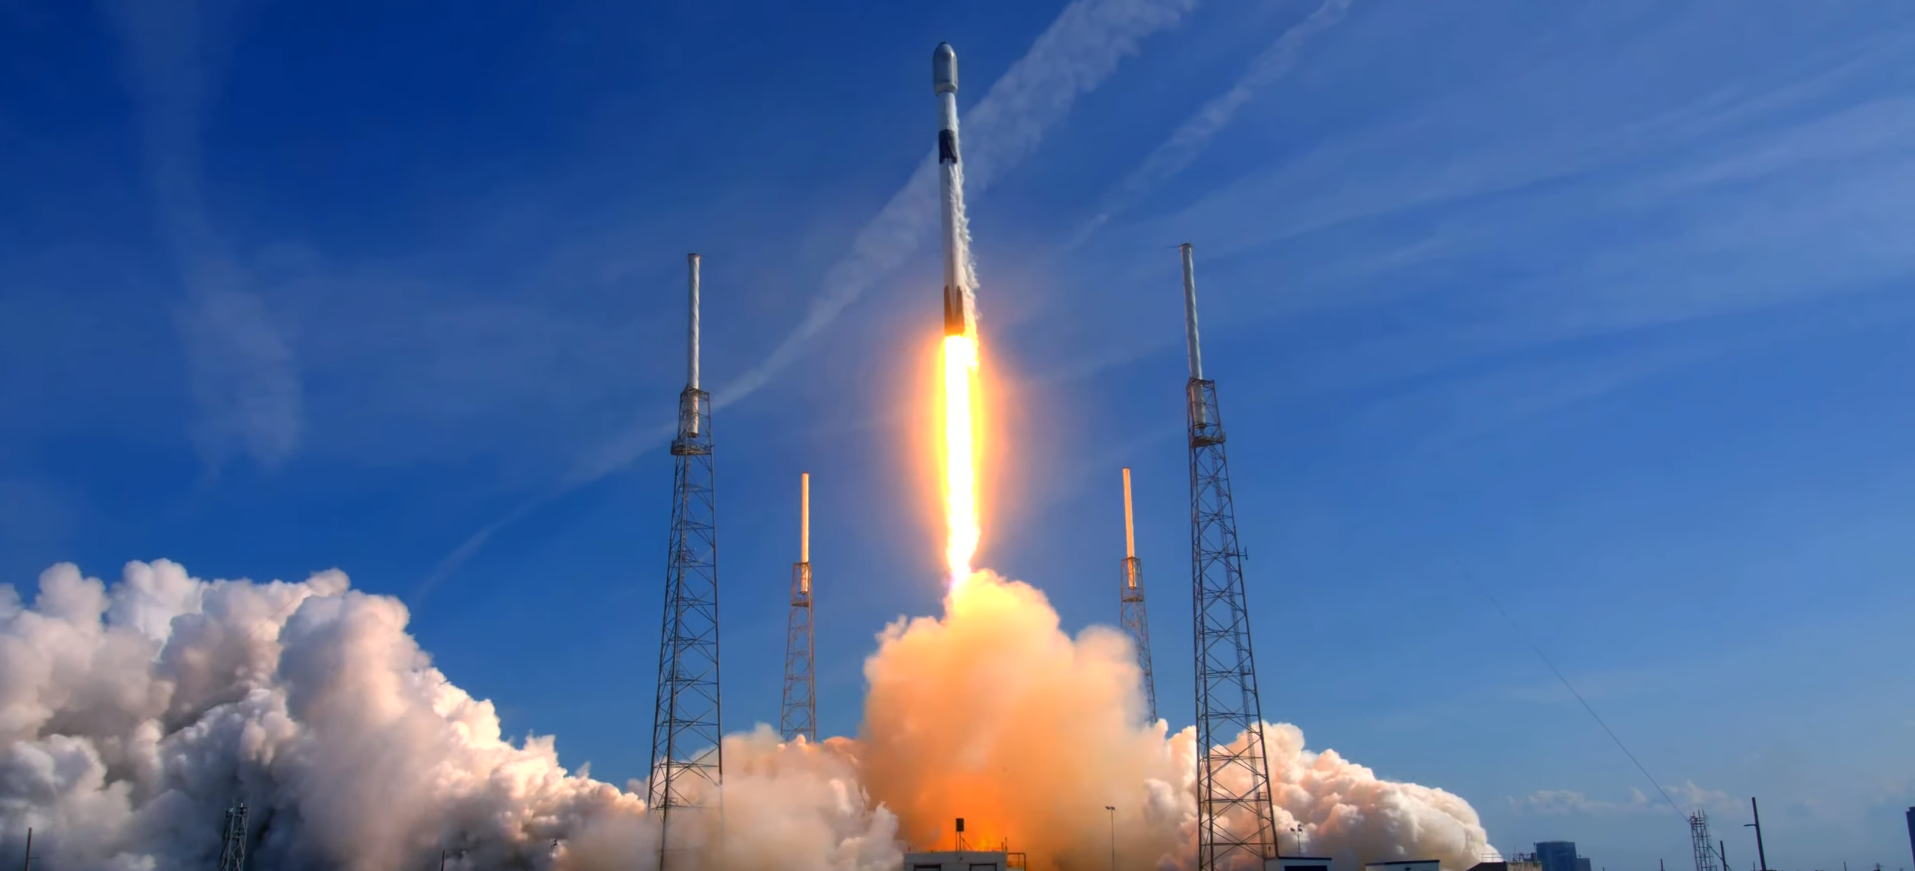 Falcon 9 starlink mission